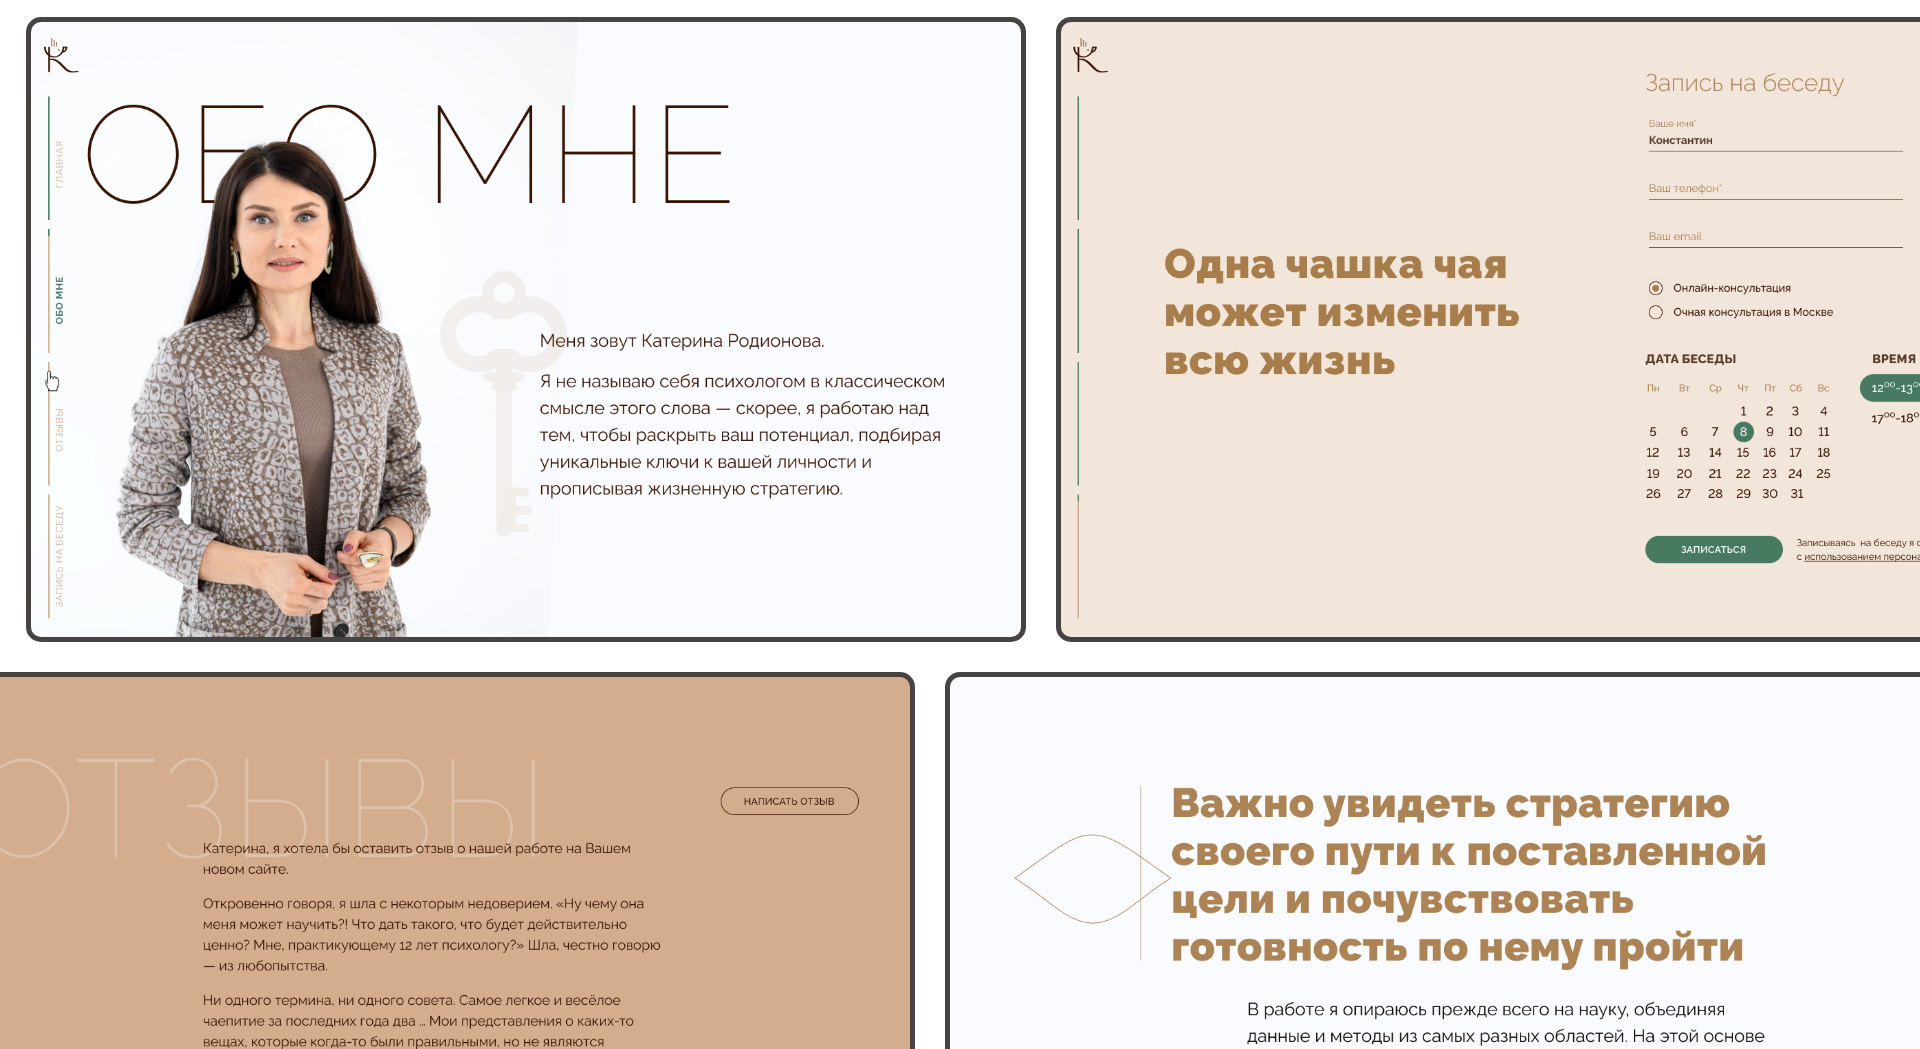 Обзор страниц сайта Екатерины Родионовой